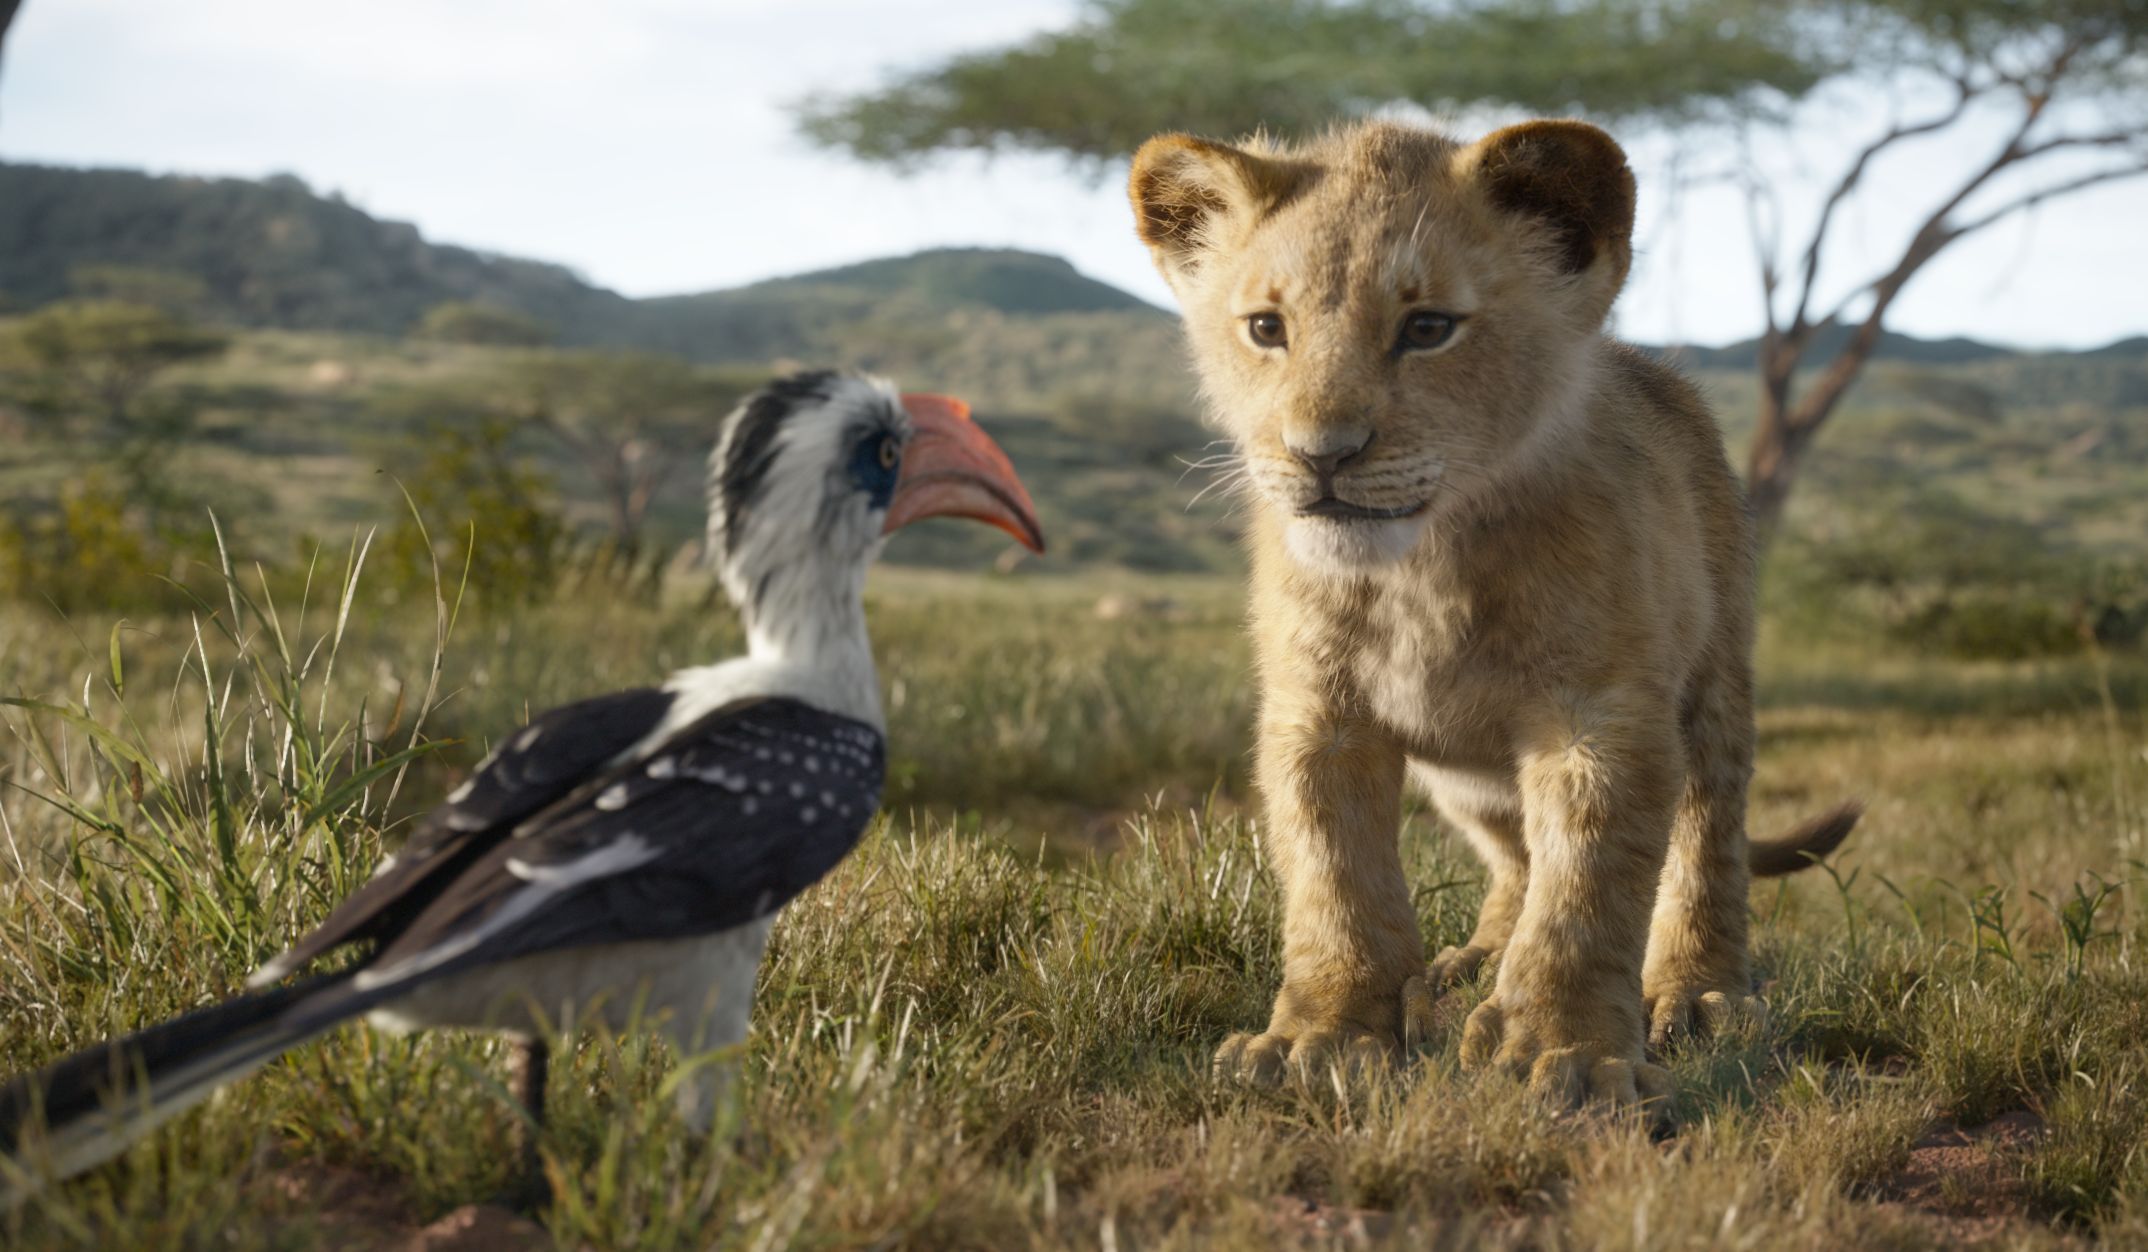 El Rey León - Nuevas imágenes de la película de imagen real de Disney